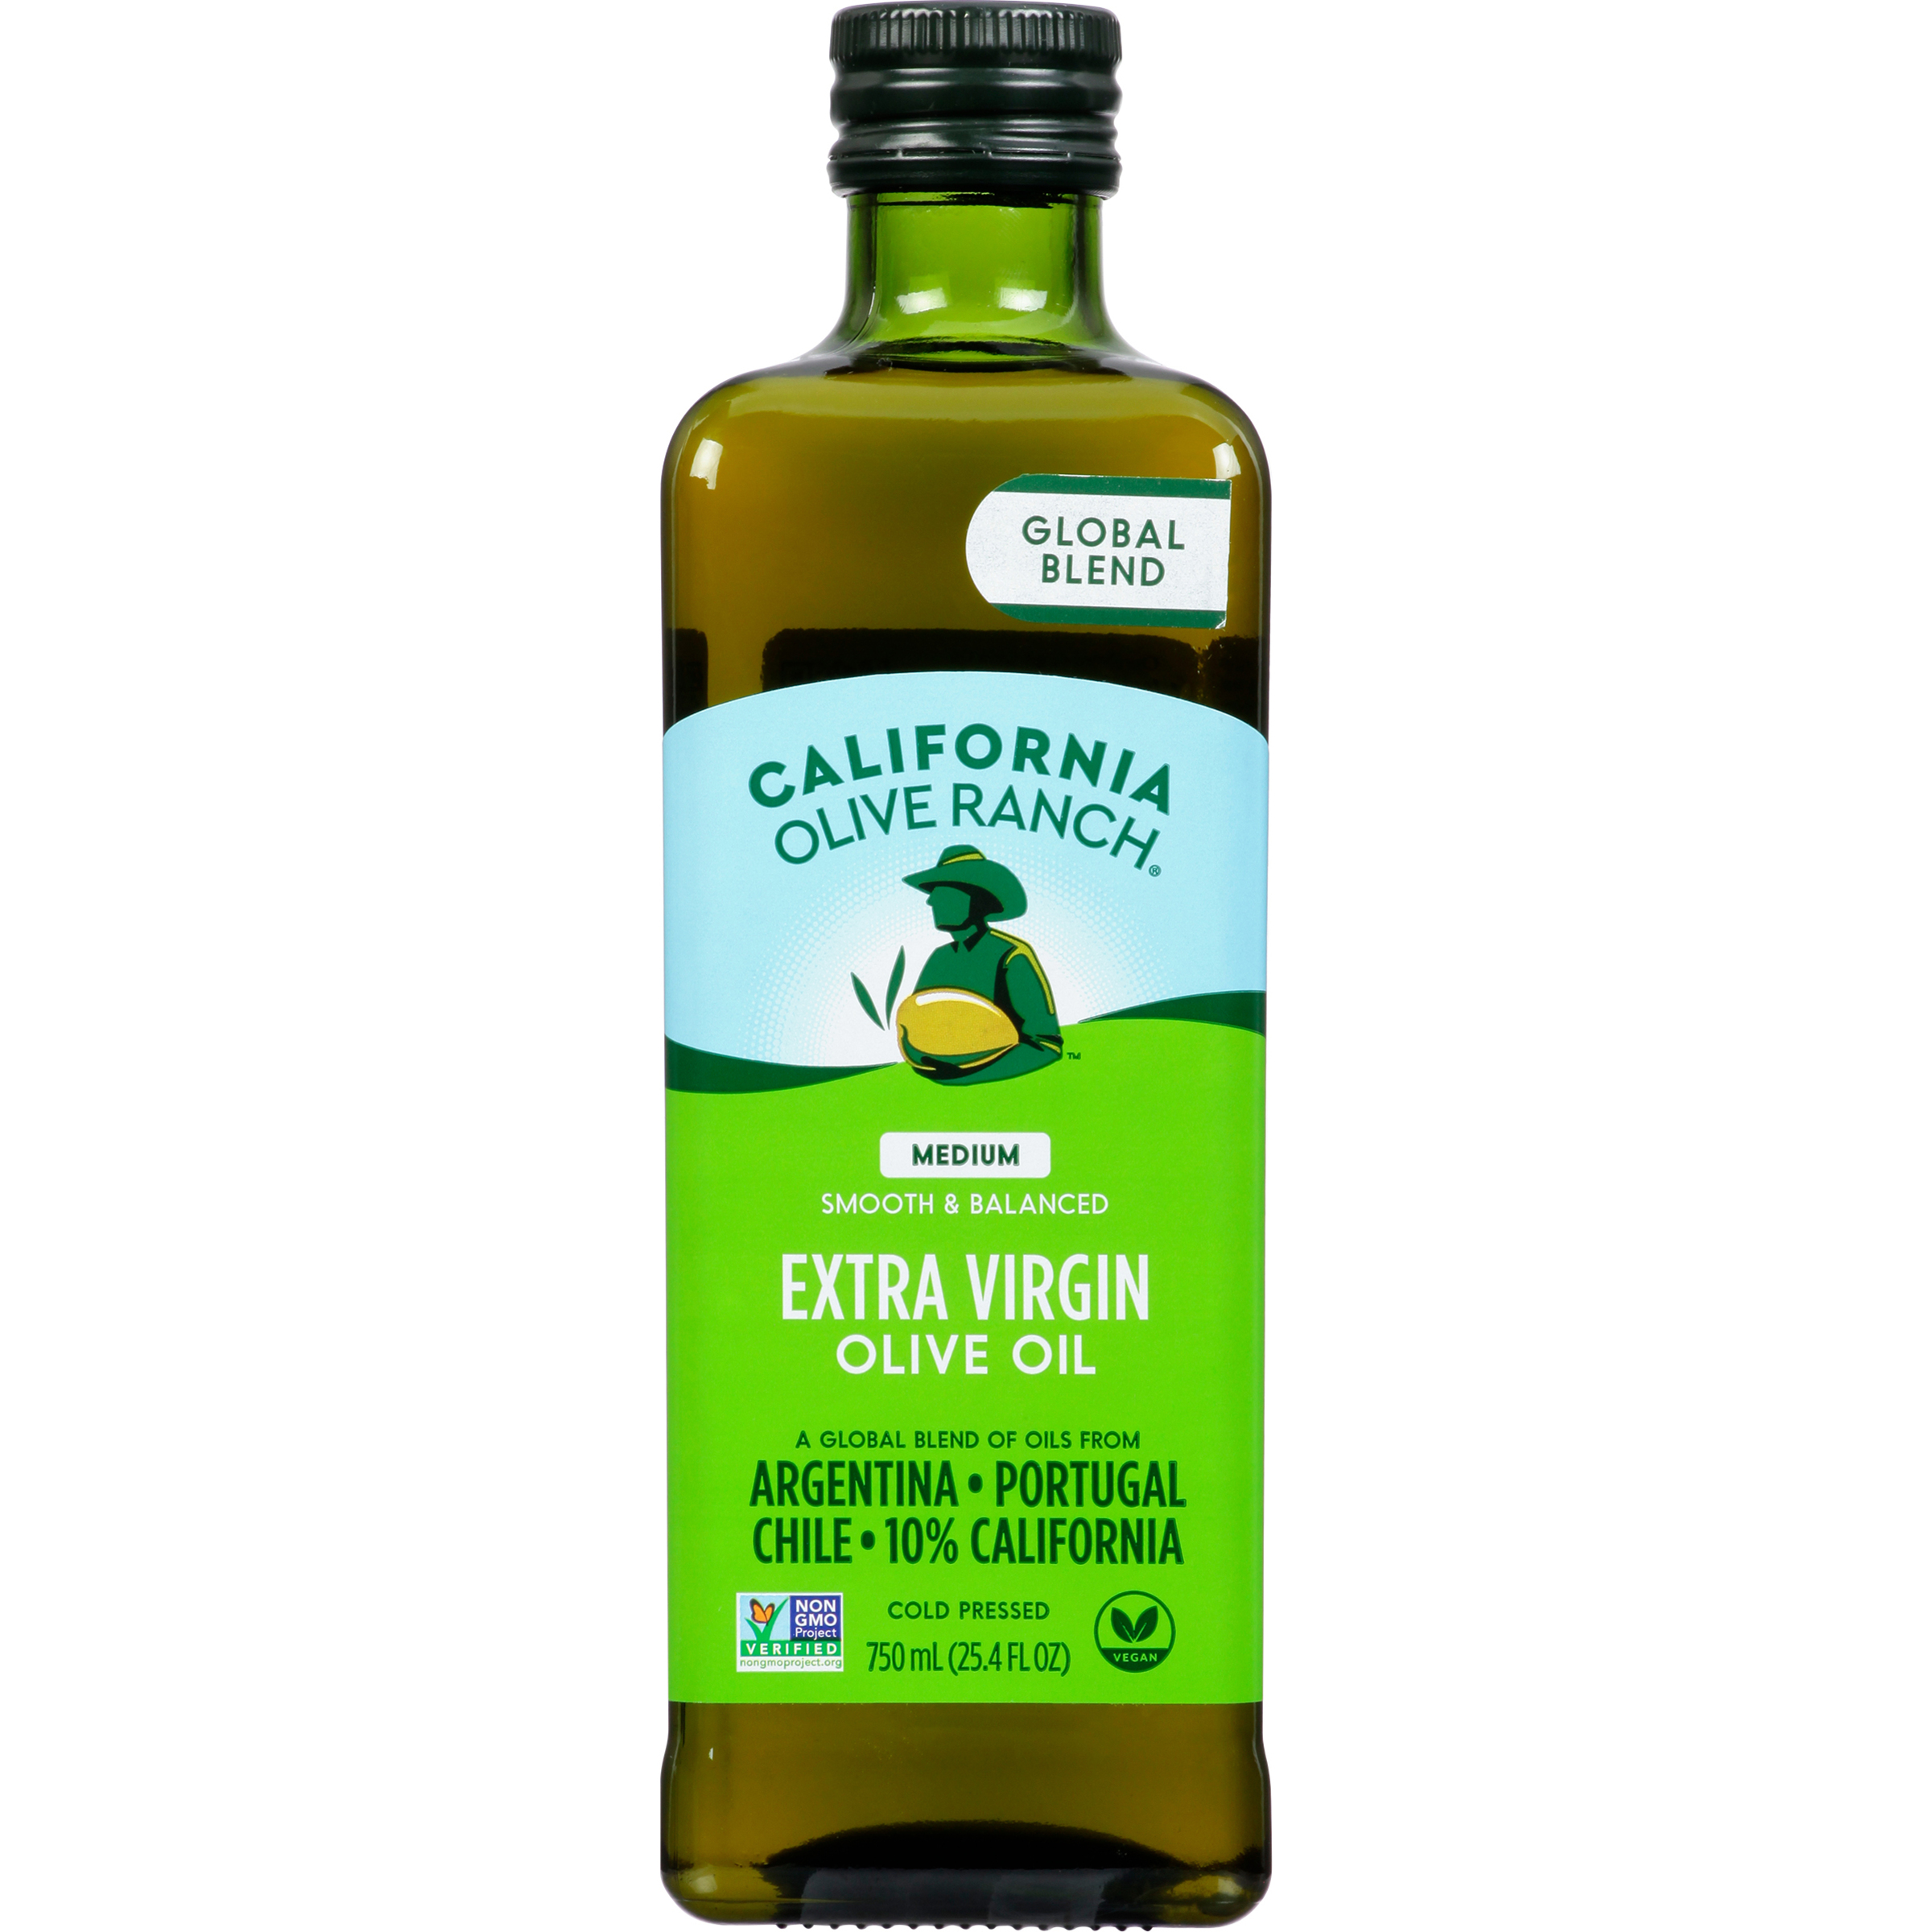 California Olive Ranch Global Blend Extra Virgin Olive Oil, Medium, 25.4 fl oz - image 1 of 7